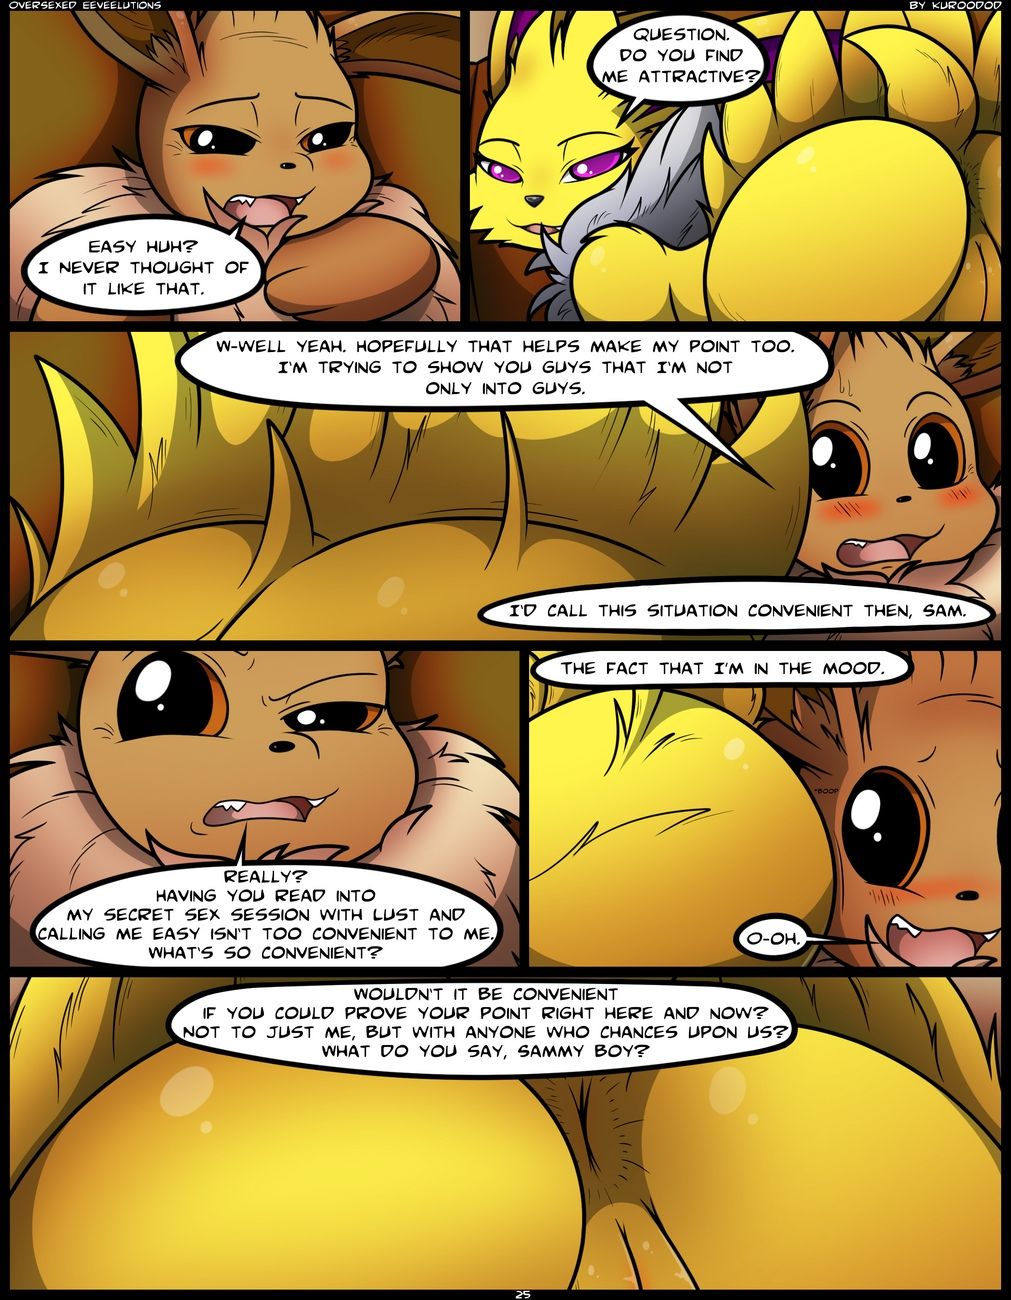 Oversexed Eeveelutions 1 page 26